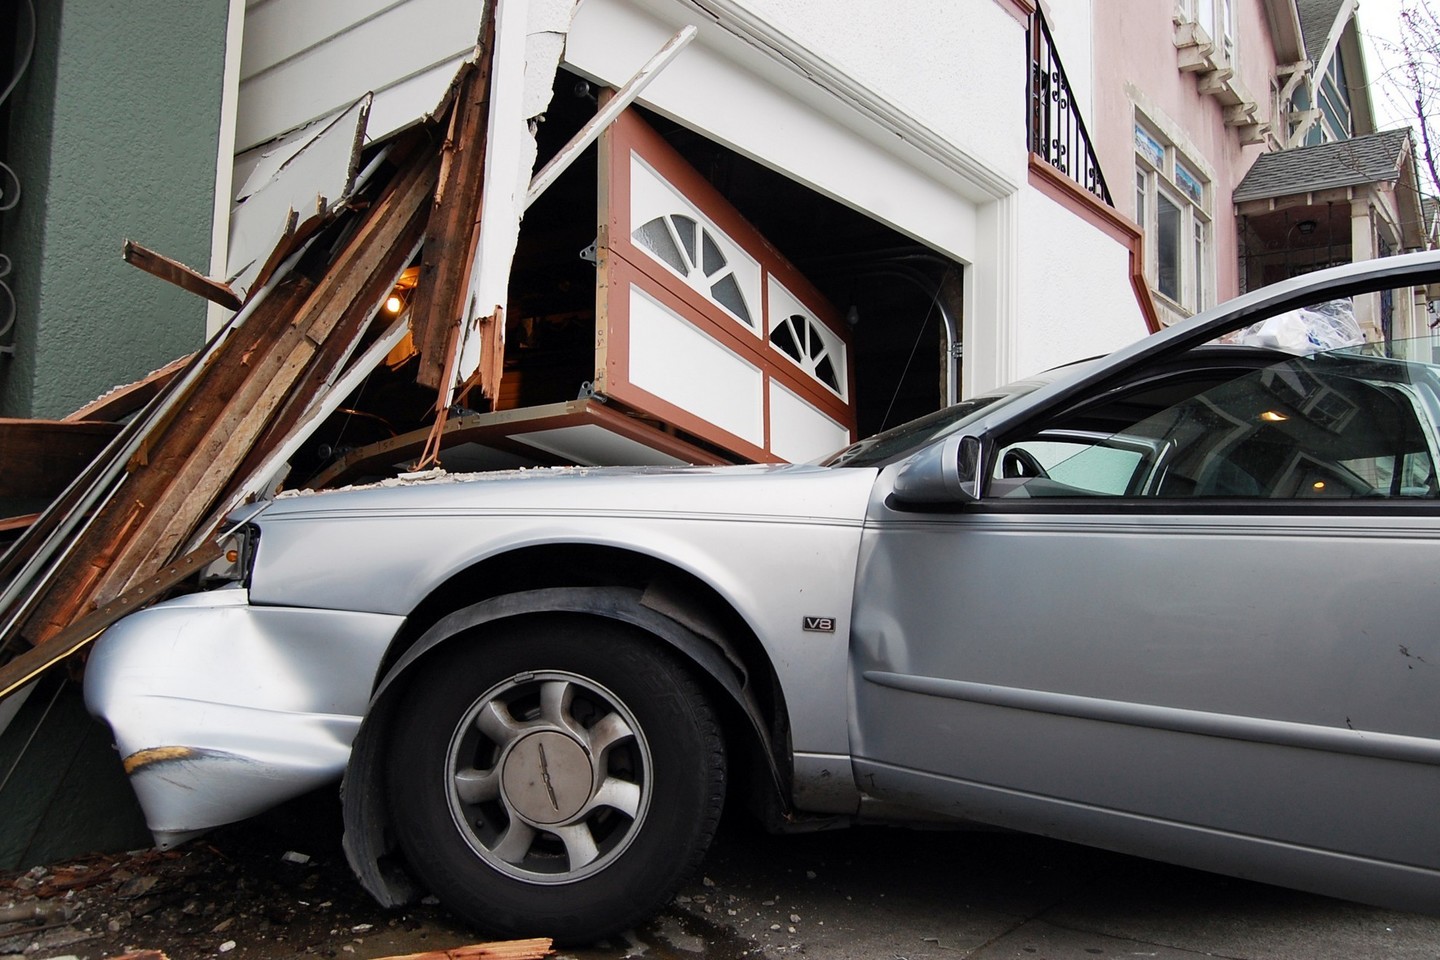 Beprotiškiausios automobilių avarijos nustebins ir visko mačiusius vairuotojus.<br>Todd Lappin/Flickr.com nuotr.